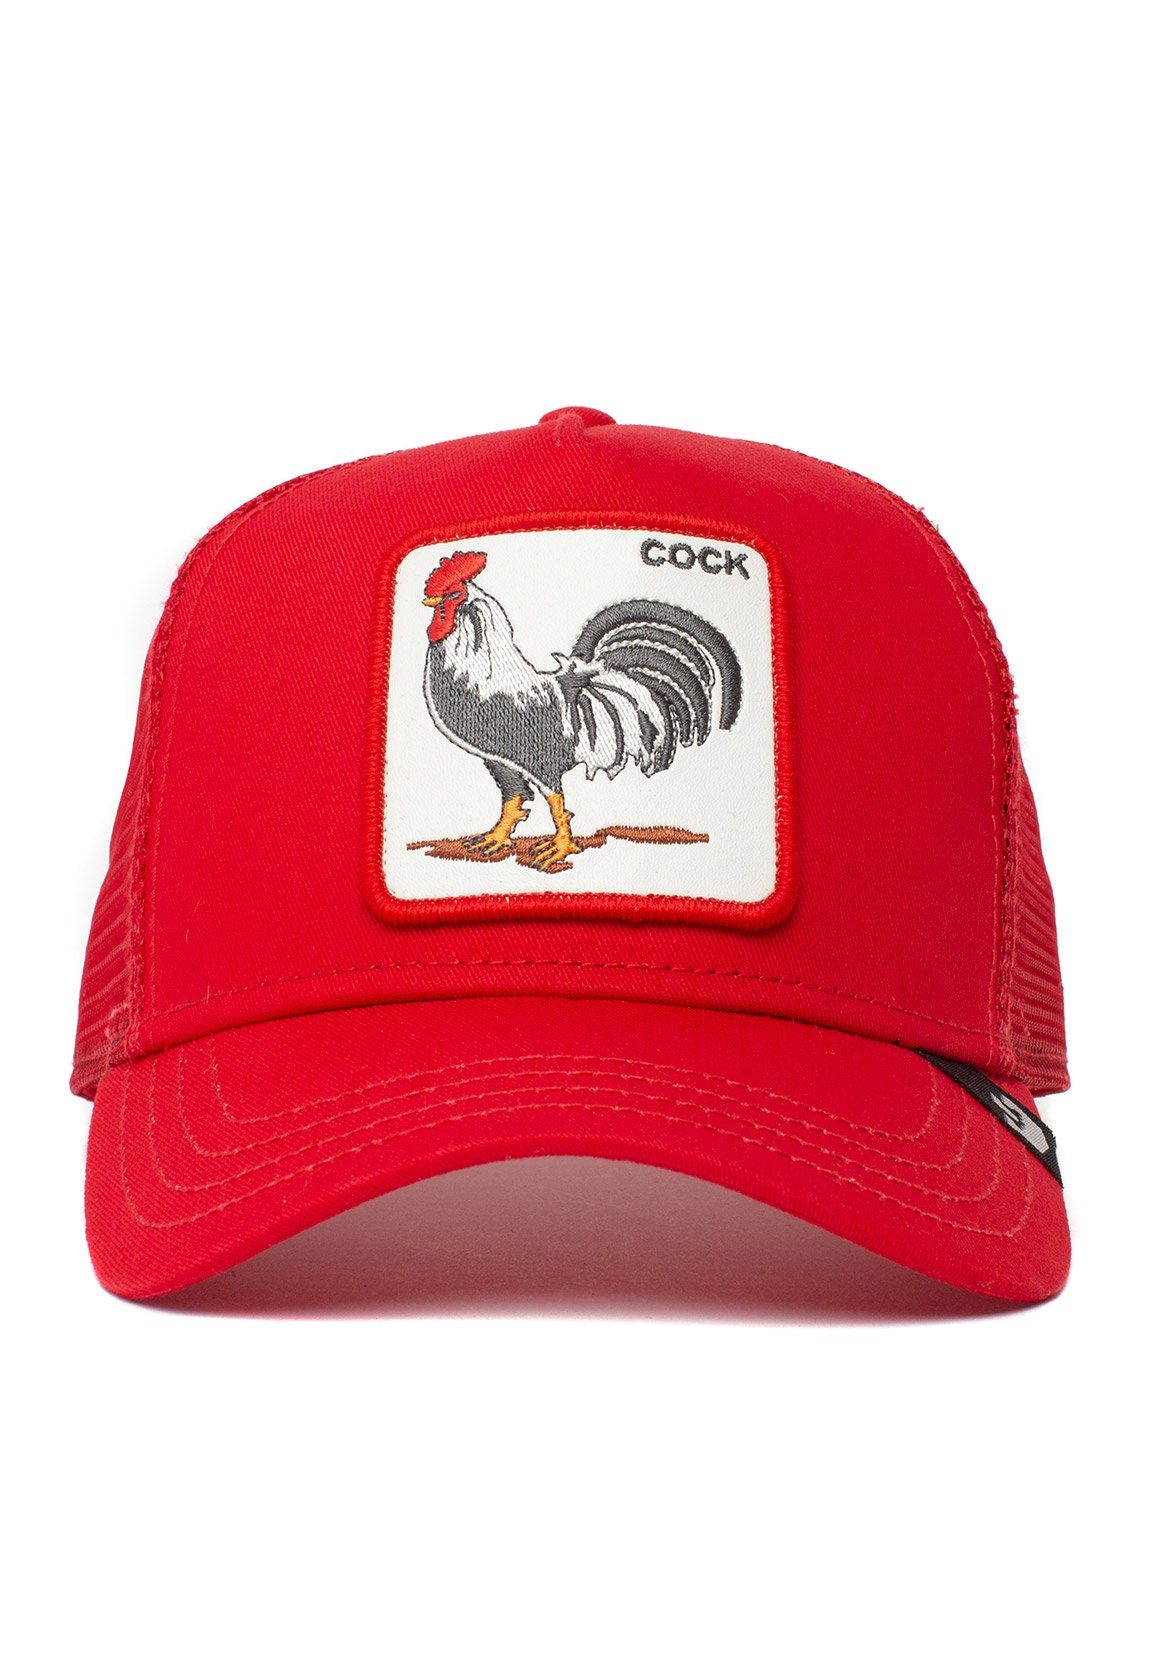 Herren Caps GOORIN Bros. Trucker Cap Goorin Bros. Trucker Cap COCK Red Rot